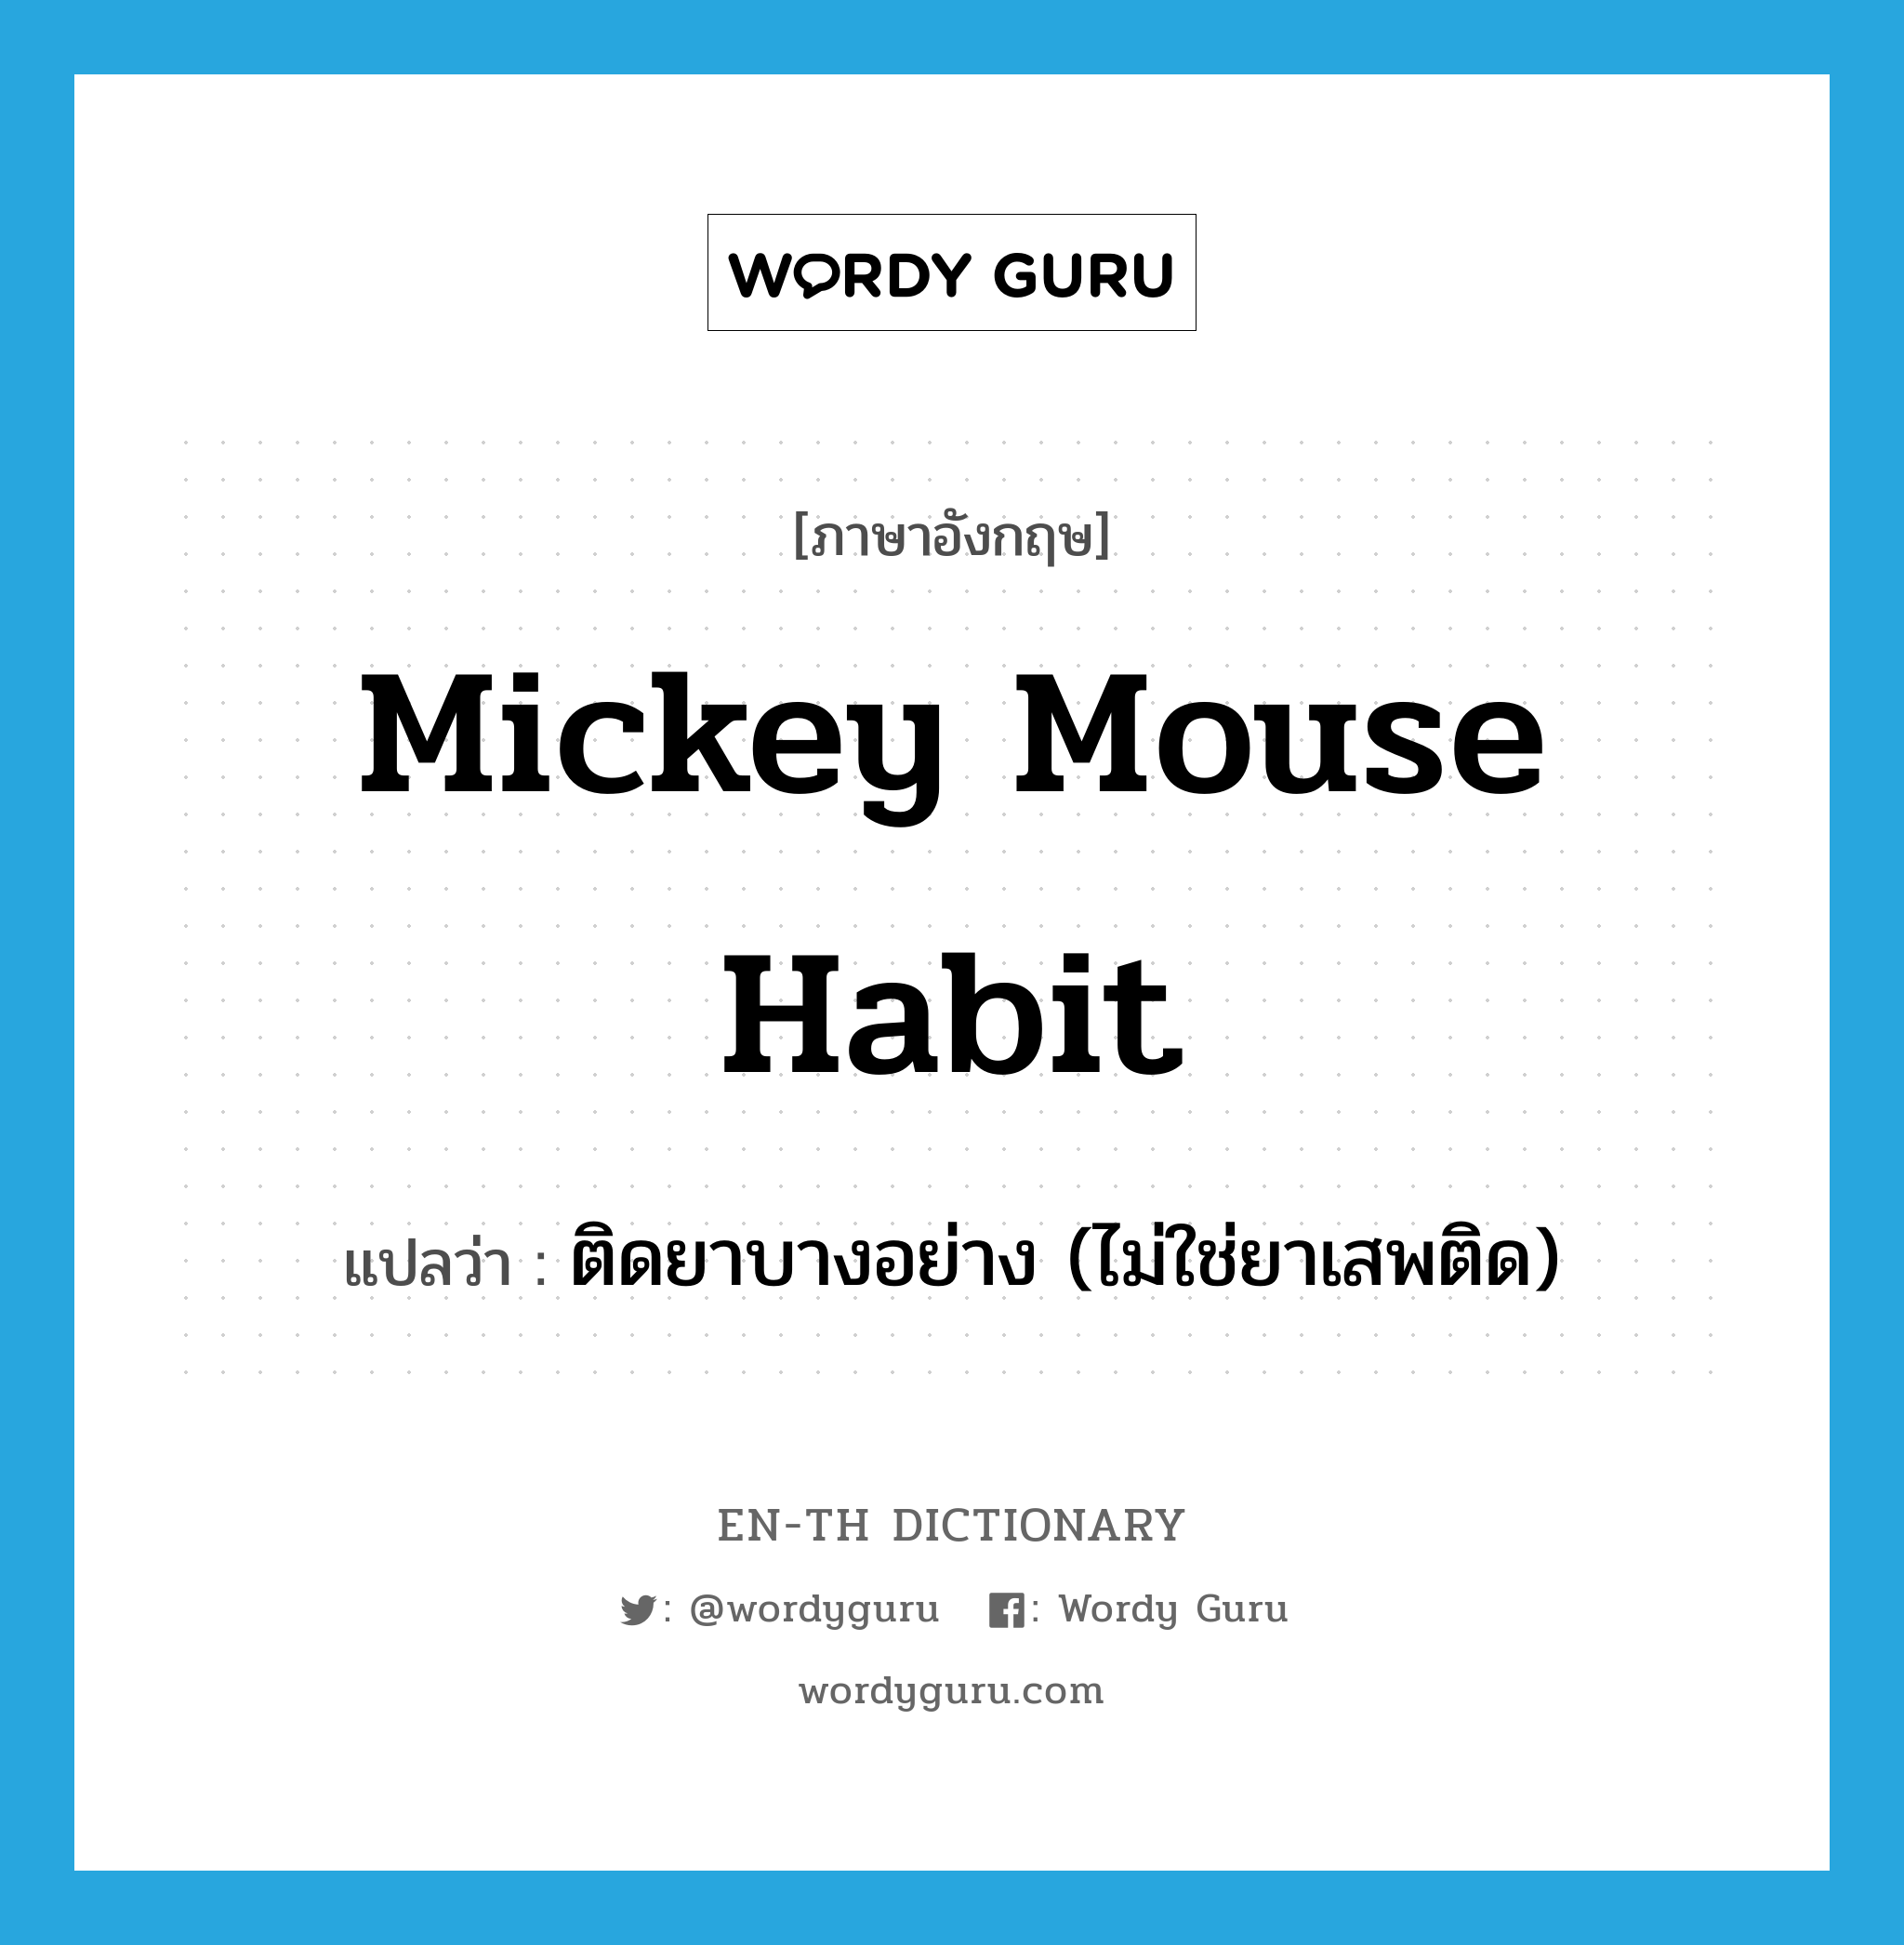 ติดยาบางอย่าง (ไม่ใช่ยาเสพติด) ภาษาอังกฤษ?, คำศัพท์ภาษาอังกฤษ ติดยาบางอย่าง (ไม่ใช่ยาเสพติด) แปลว่า mickey mouse habit ประเภท SL หมวด SL